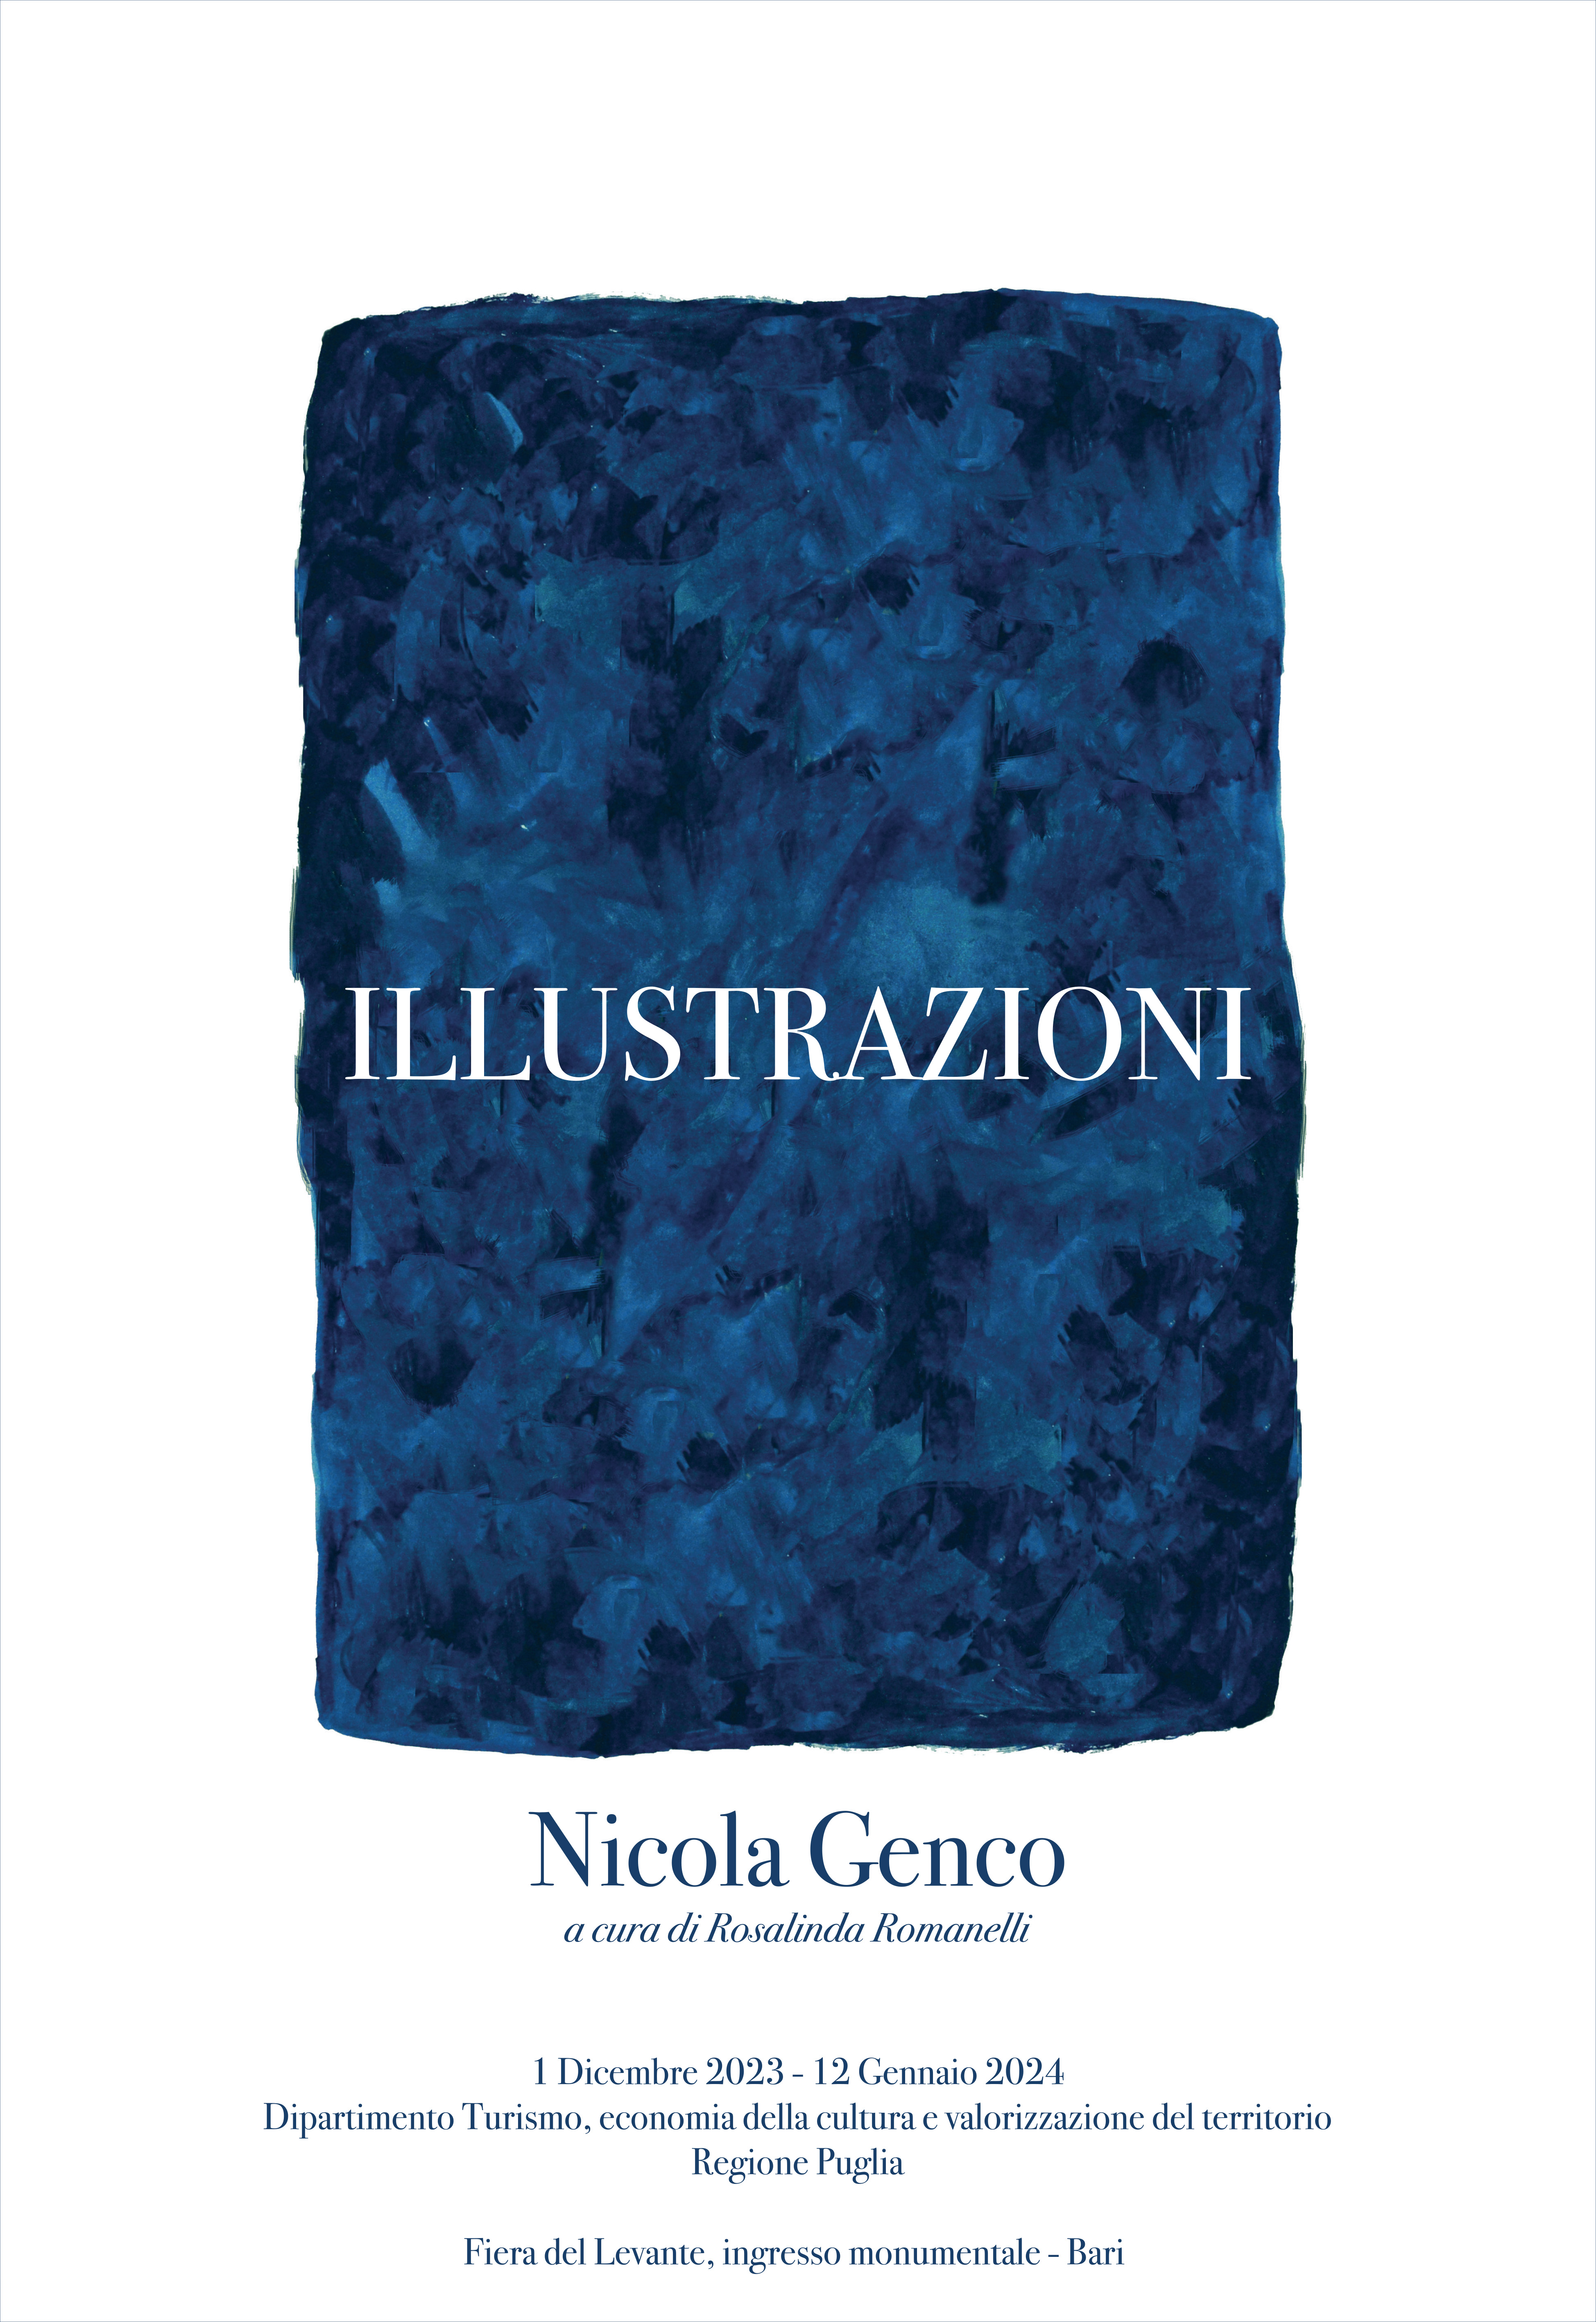 Galleria “Illustrazioni” e “L’abbraccio”, esposizione e opera del Maestro Nicola Genco in mostra al Polo Arti Cultura Turismo della Regione Puglia - Diapositiva 1 di 10